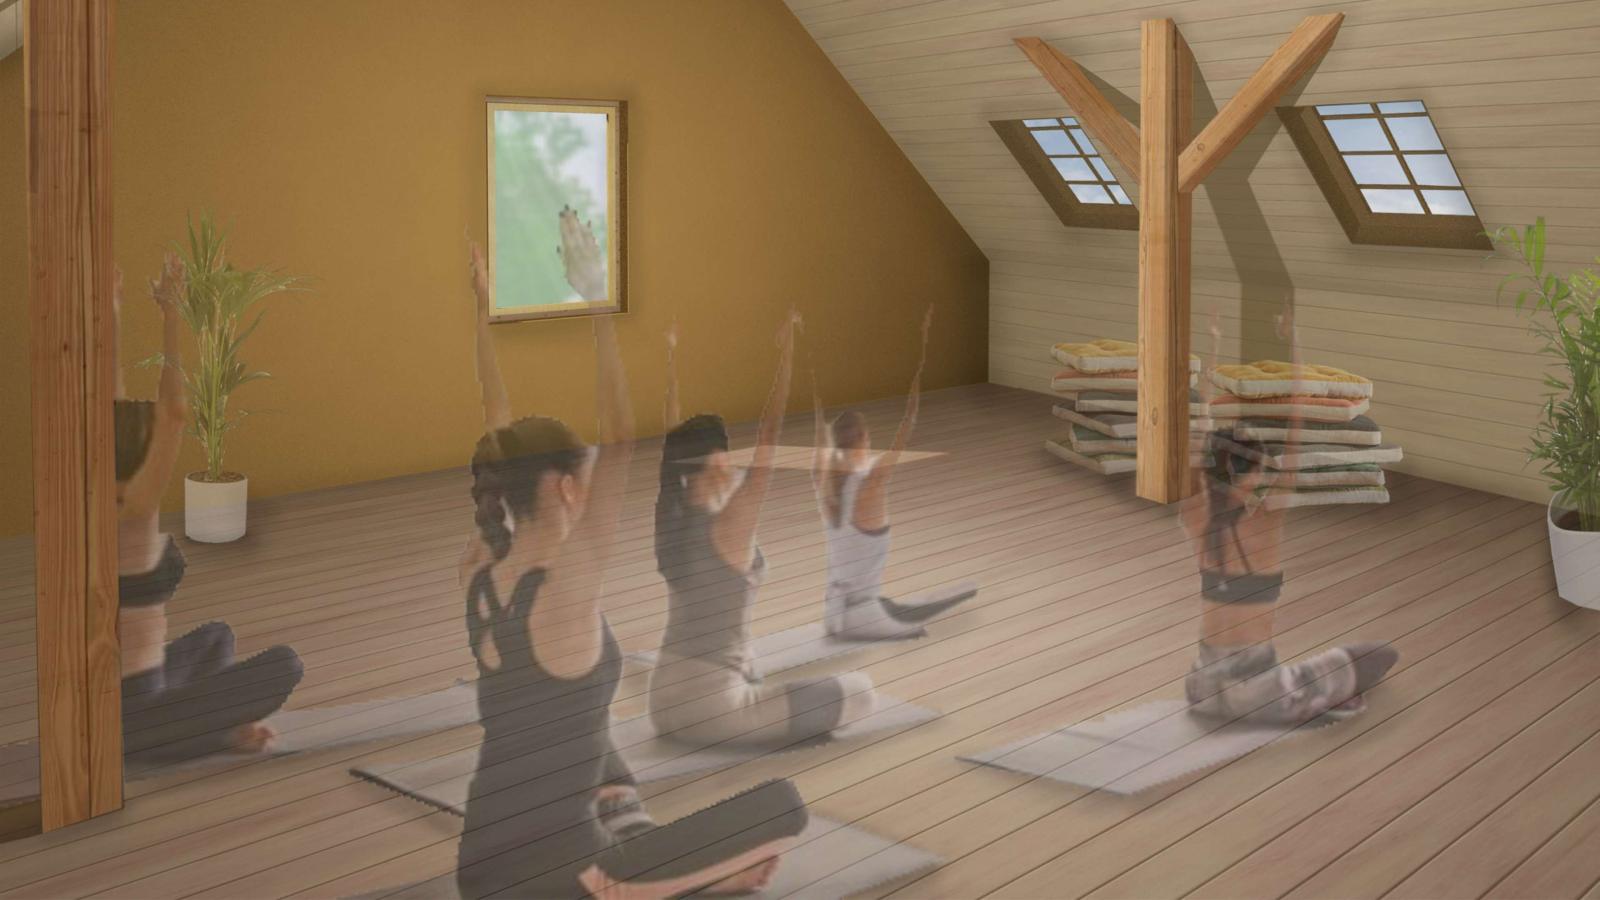 Virtuelle Ansicht von der Nutzung des Scheunendachbodens für Yoga-Kurse